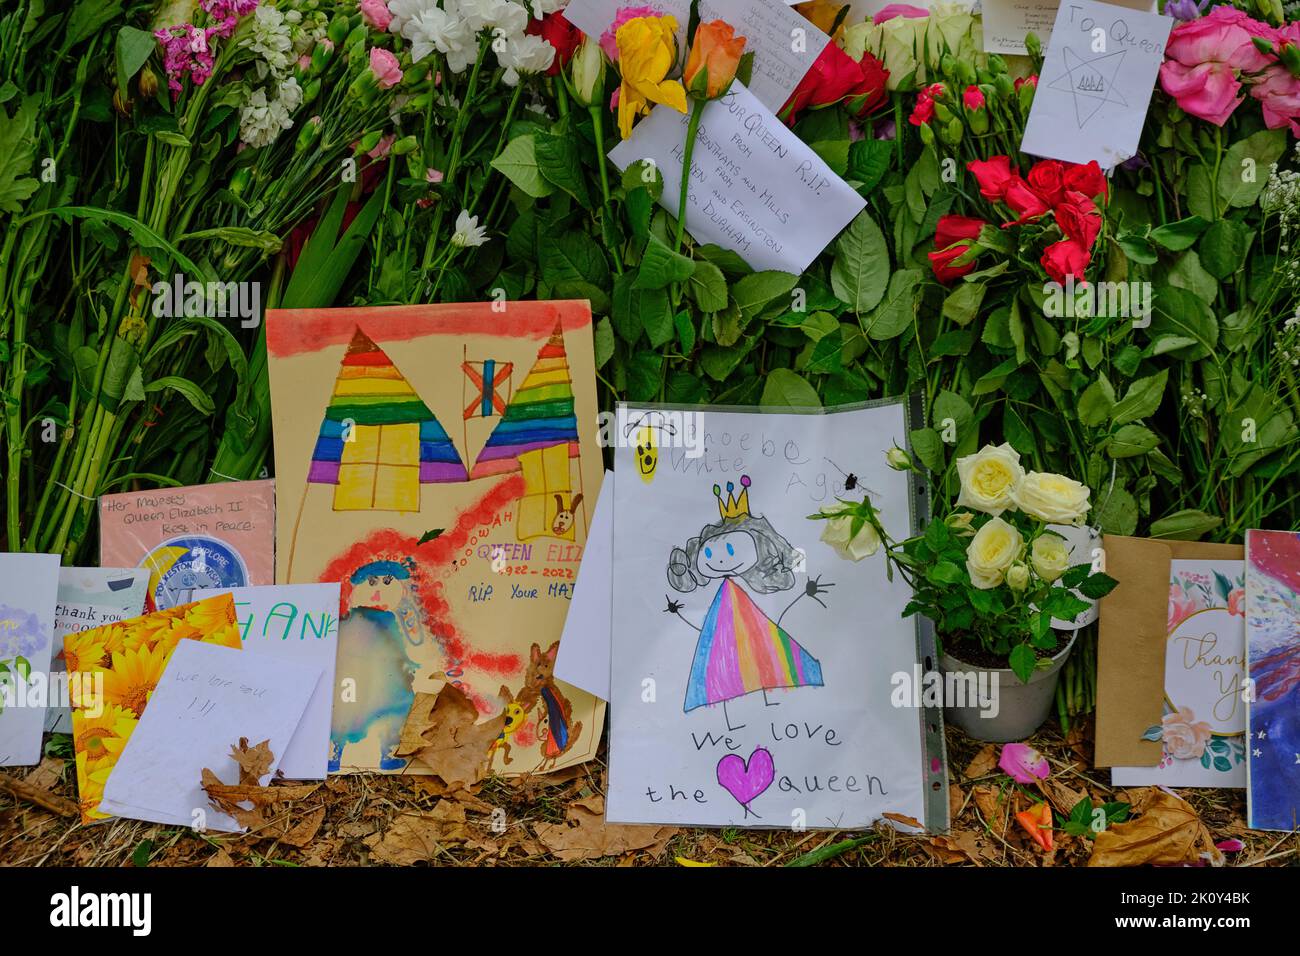 Les enfants apportent des cartes et des photos dessinées à la main dans le cadre d'un hommage floral après la mort de la Reine, Green Park, Londres Banque D'Images